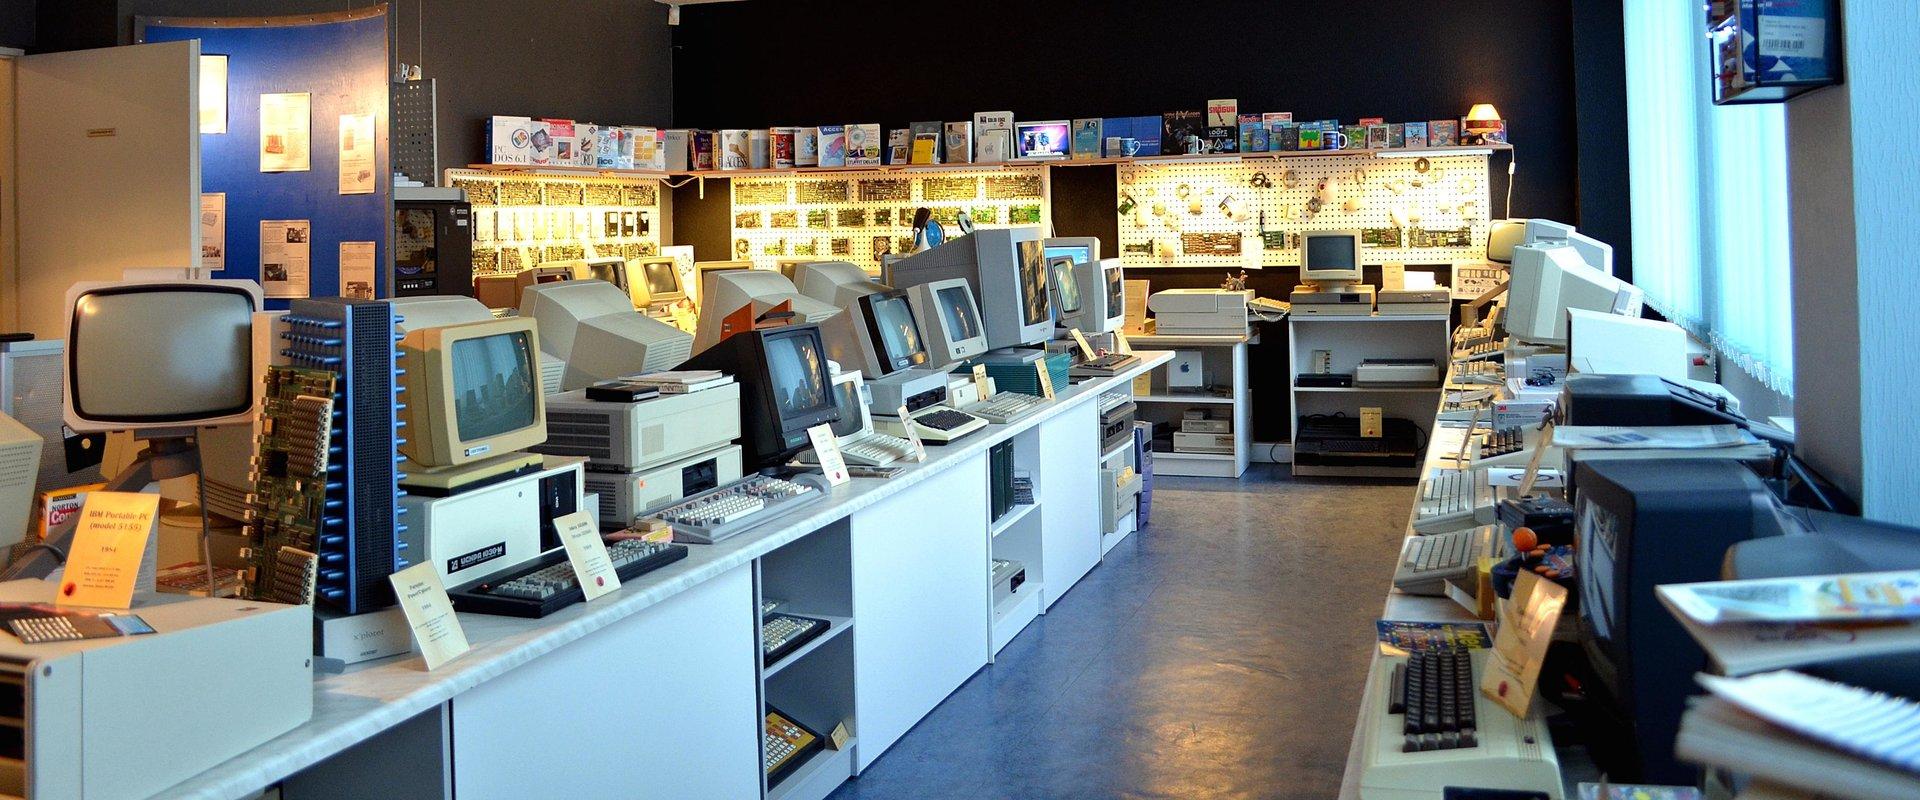 Tallinnassa sijaitseva Viron vanhin ja ainut tietokonemuseo on avoinna kaikille kiinnostuneille. Museo on suuri yksityiskokoelma ja tarjoaa vierailija